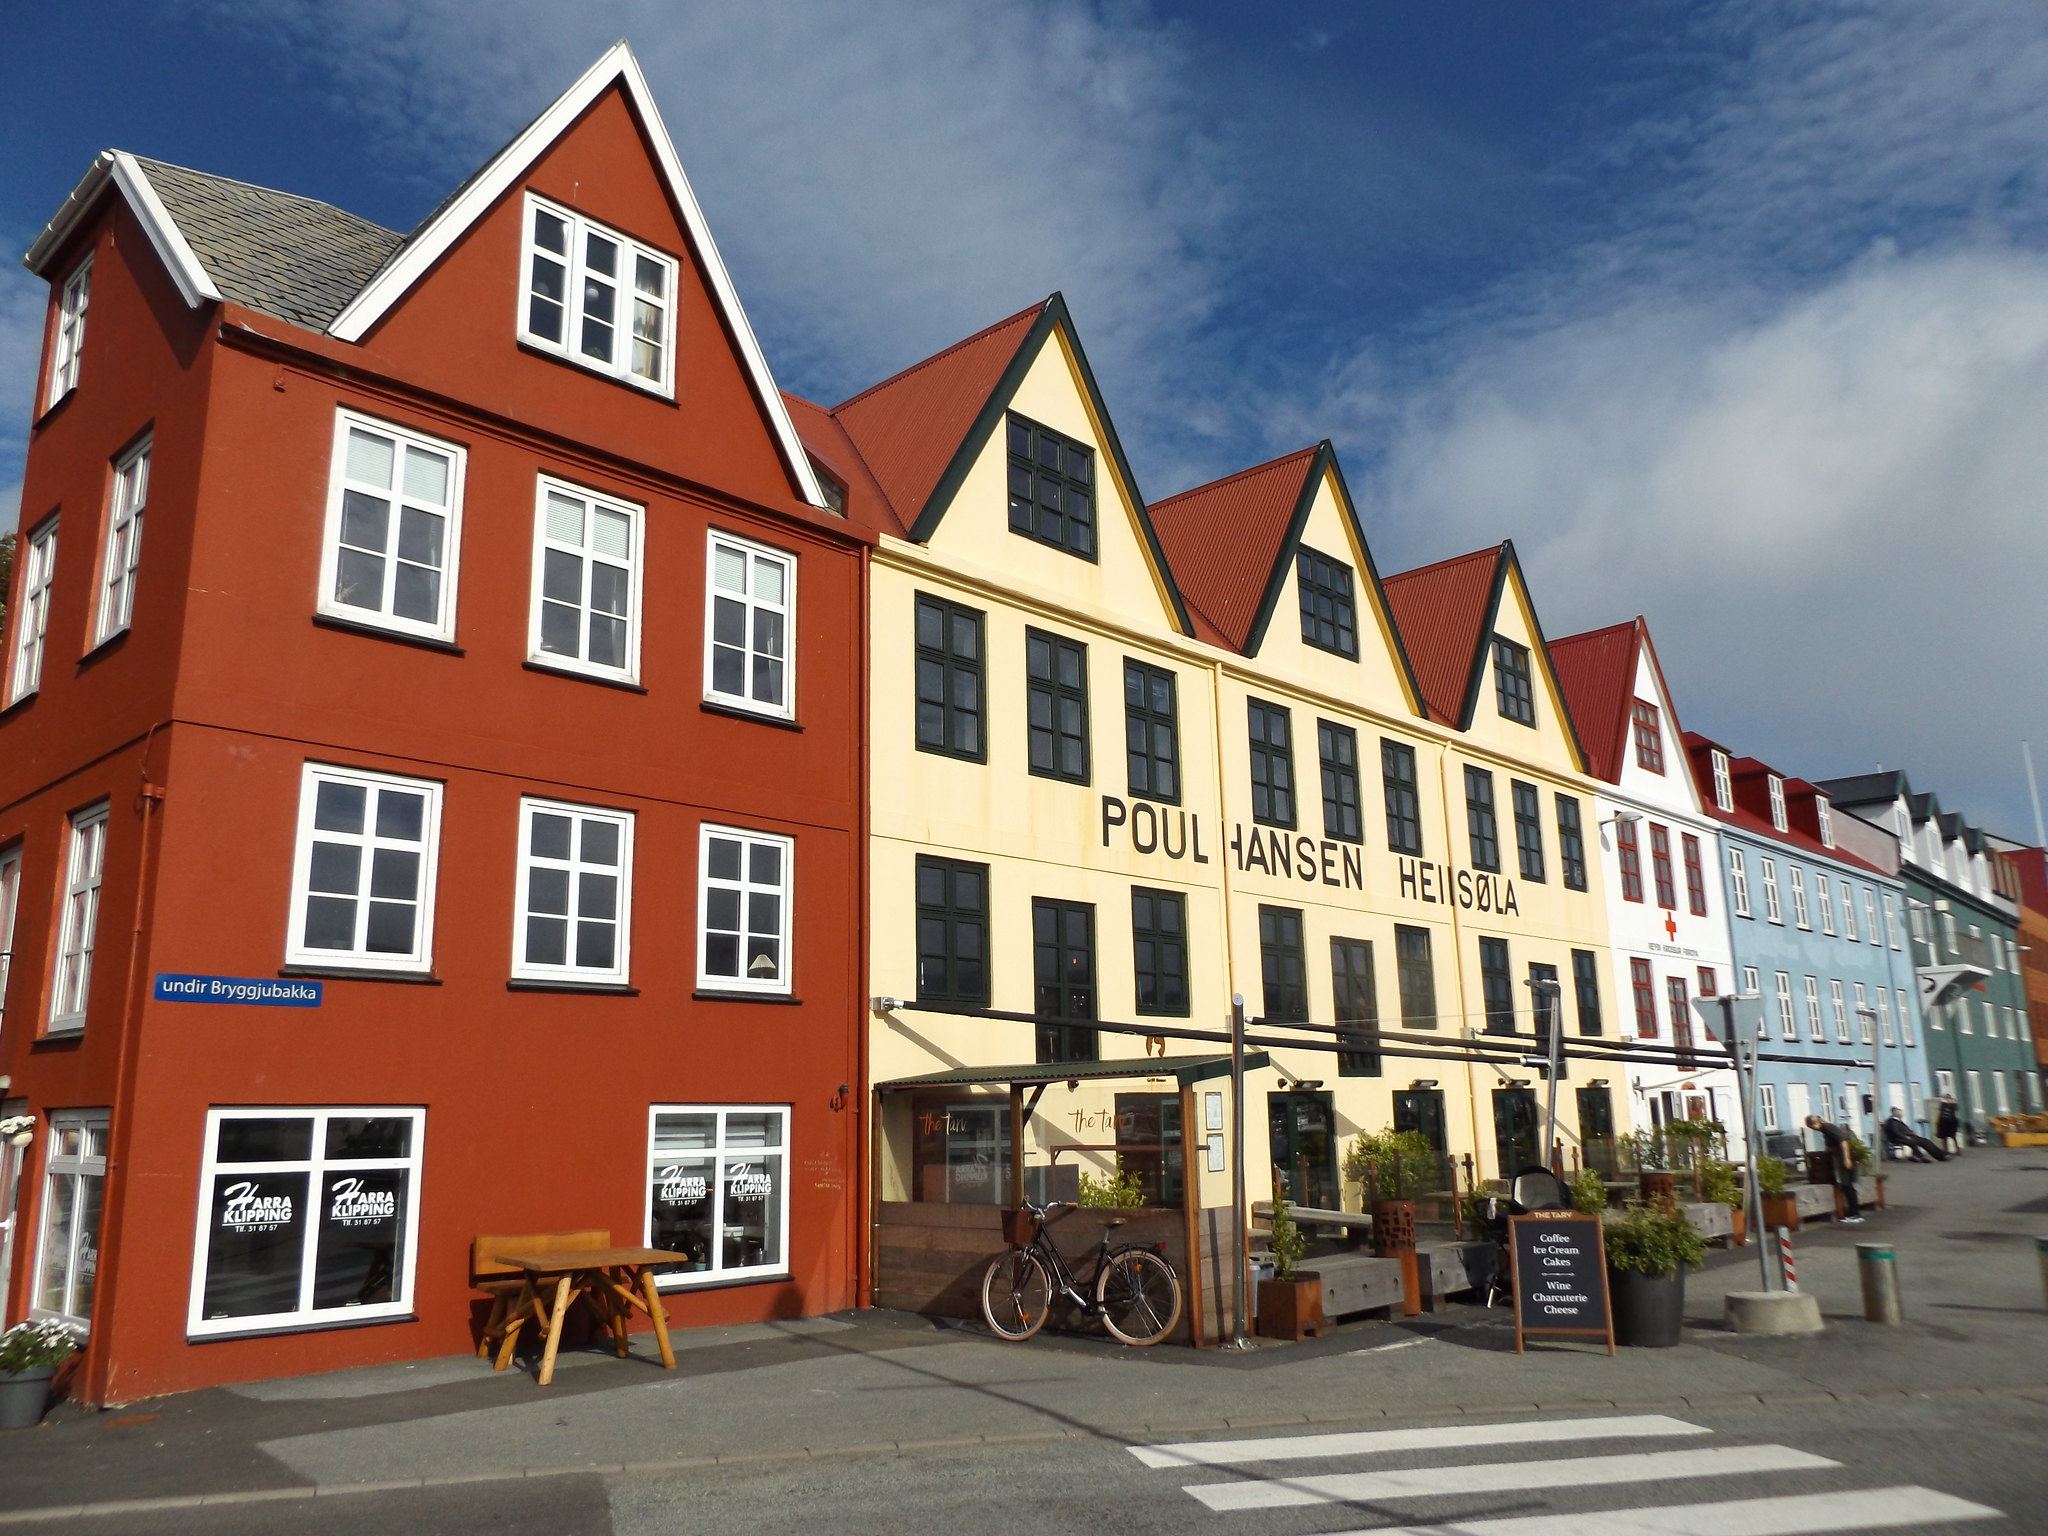 Buildings in undir Bryggjubakka, Tórshavn, Faroe Islands, 12 July 2018